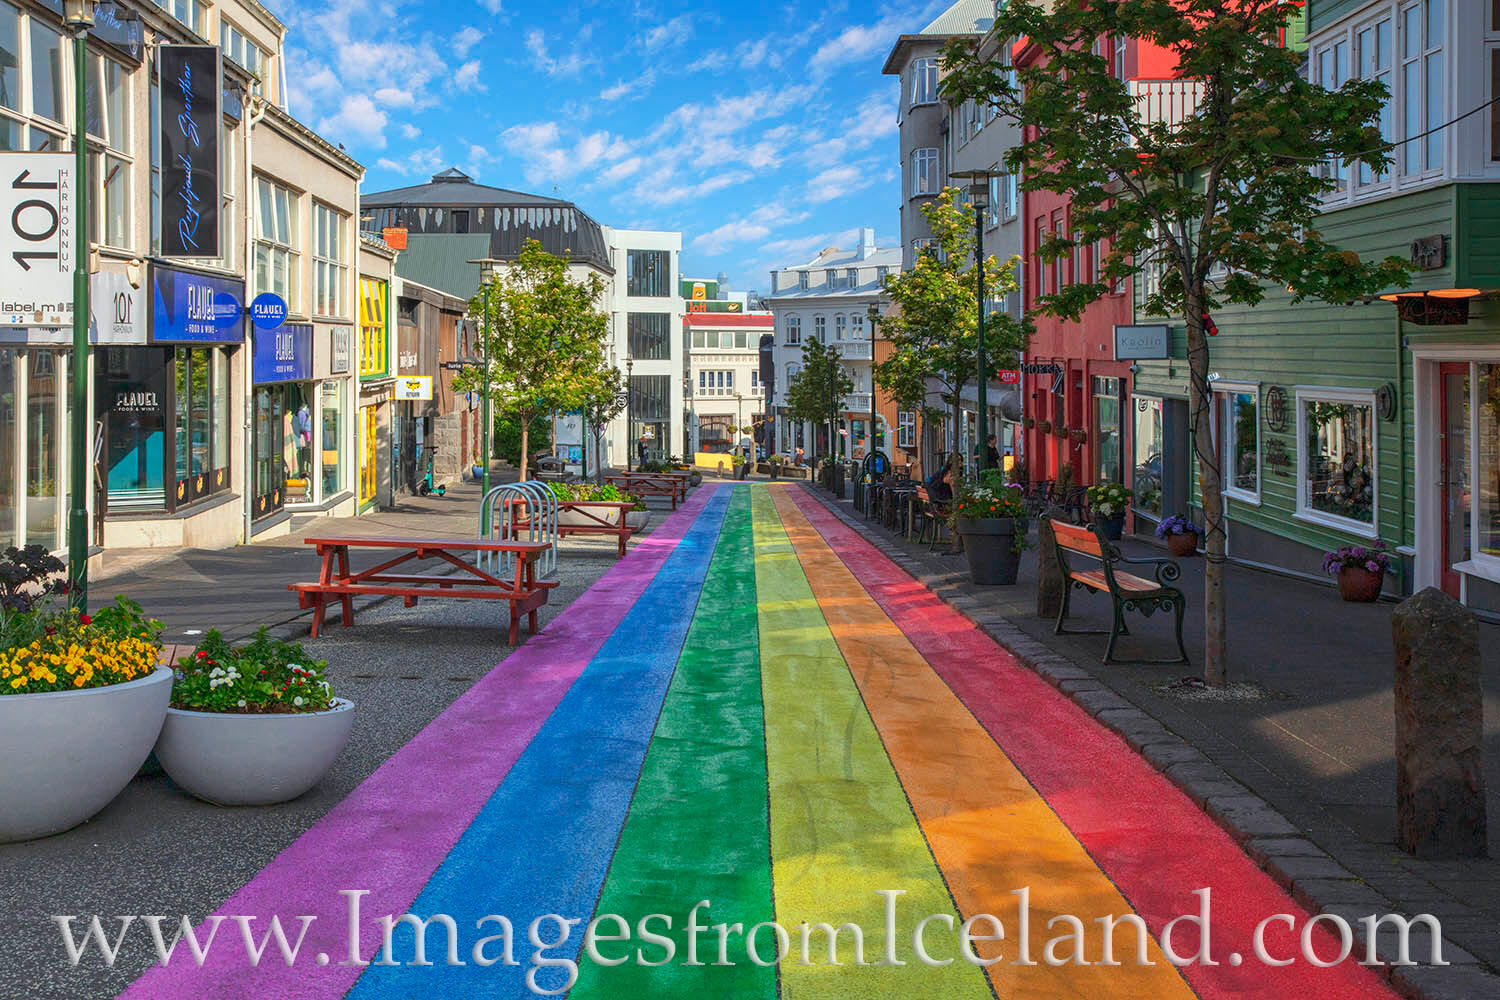 Skólavörðustígur, the "Rainbow Street" in Reykjavik, adds color to the beautiful capital city of Iceland.